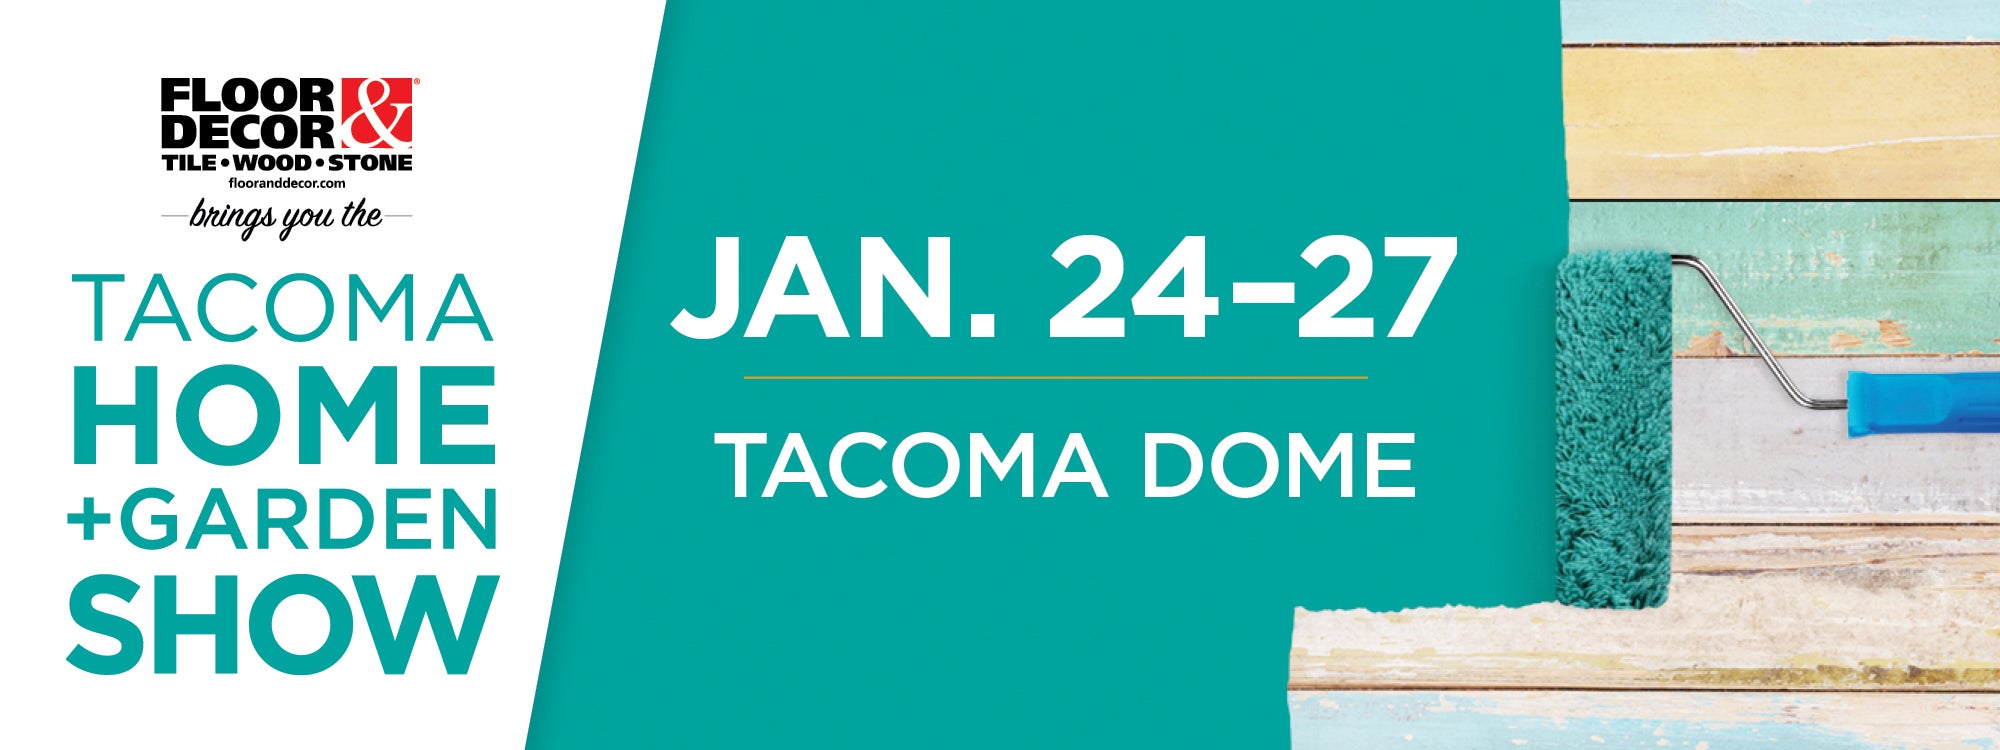 tacoma home + garden show | tacoma dome